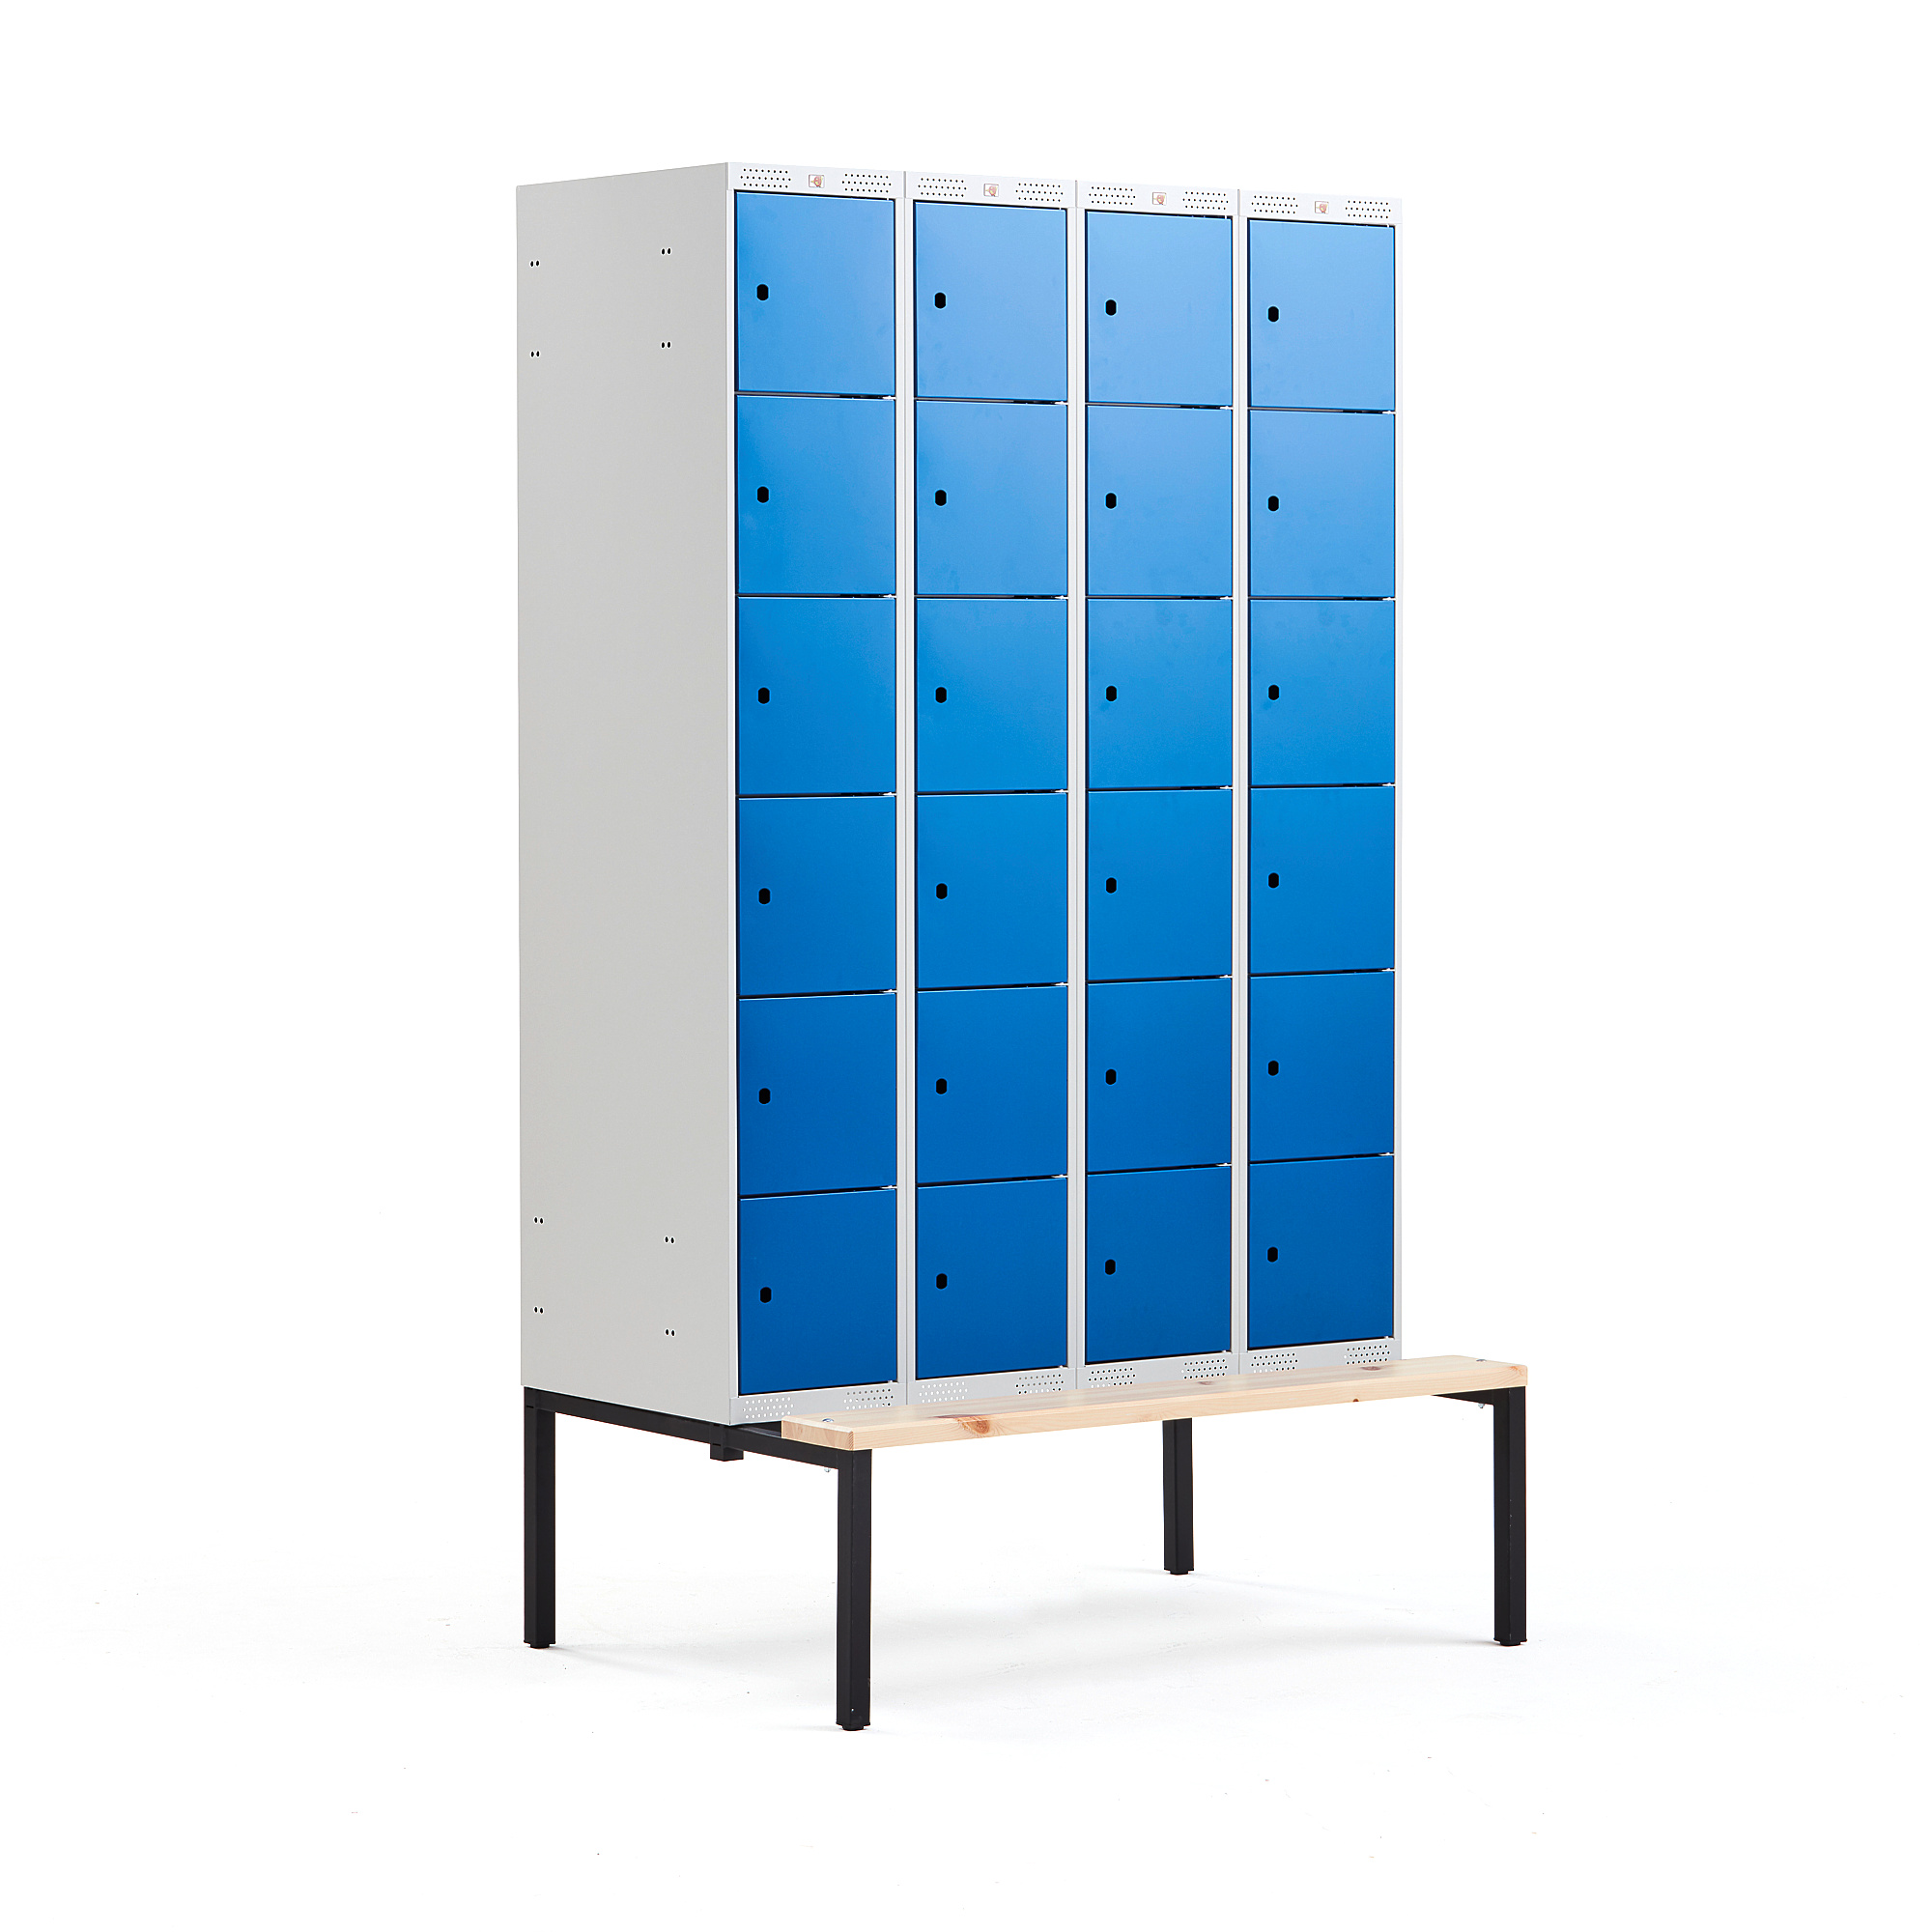 Boxová šatní skříň CLASSIC, s lavicí, 4 sekce, 24 boxů, 2120x1200x550 mm, modré dveře